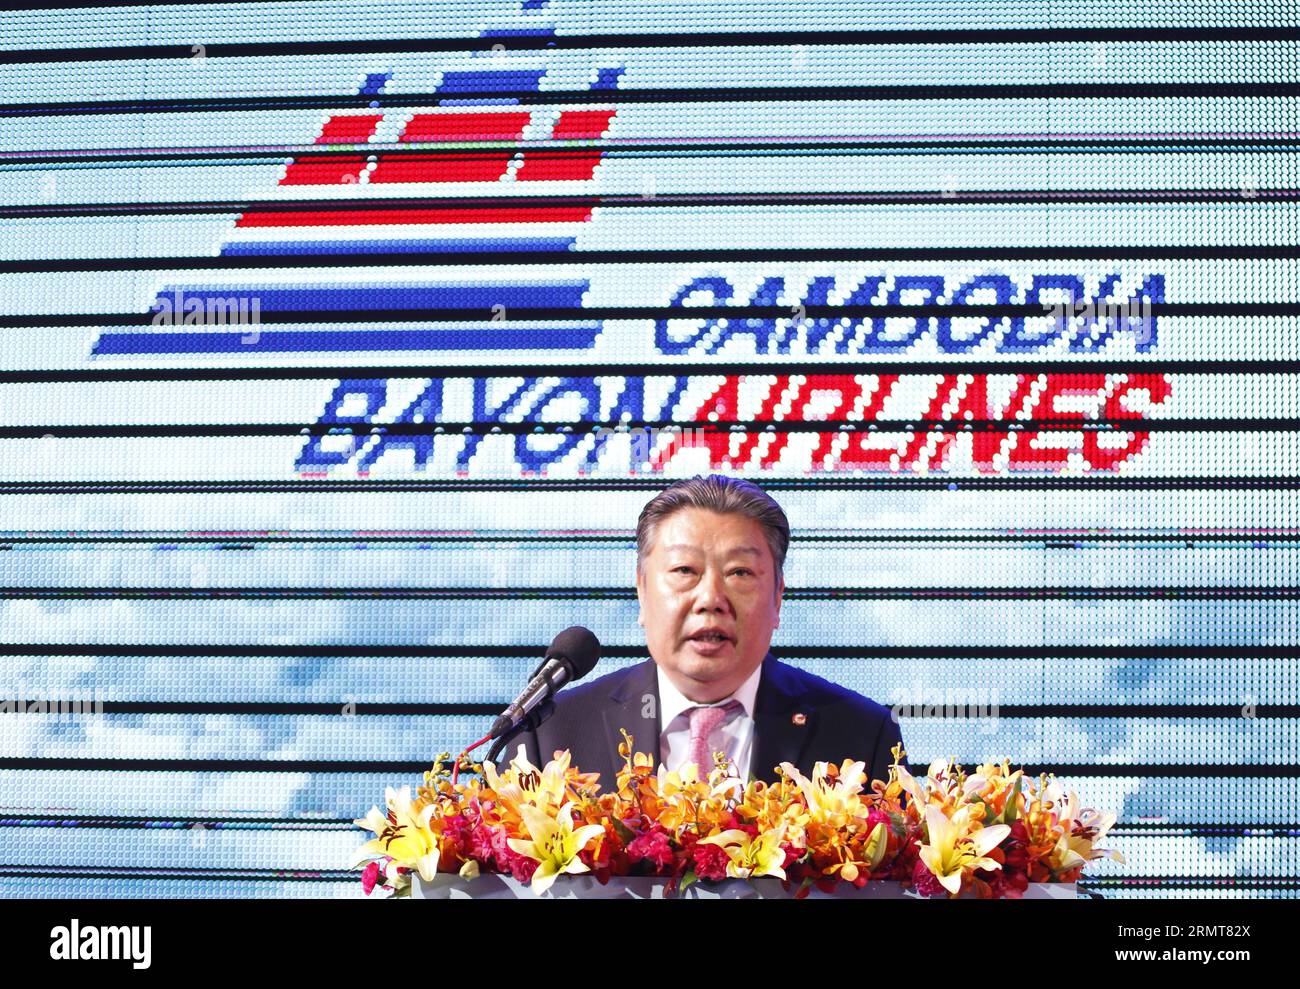 (140821) -- PHNOM PENH, 21. August 2014 -- Lin Zuoming, Vorsitzender der Aviation Industry Corporation of China, spricht über die Lauchzeremonie in Phnom Penh, Kambodscha, 21. August 2014. Cambodia Bayon Airlines, eine hundertprozentige Tochtergesellschaft der Aviation Industry Corporation of China (AVIC), wurde am Donnerstag in Kambodscha gegründet und die ersten Flüge werden bis Ende dieses Jahres beginnen, sagten Beamte. ) KAMBODSCHA-PHNOM PENH-AIRLINE Sovannara PUBLICATIONxNOTxINxCHN Phnom PENH 21. August 2014 Lin, Vorsitzender der Luftfahrtindustrie Chinas, spricht ÜBER DIE Zeremonie in Phnom Penh Kambodscha Stockfoto